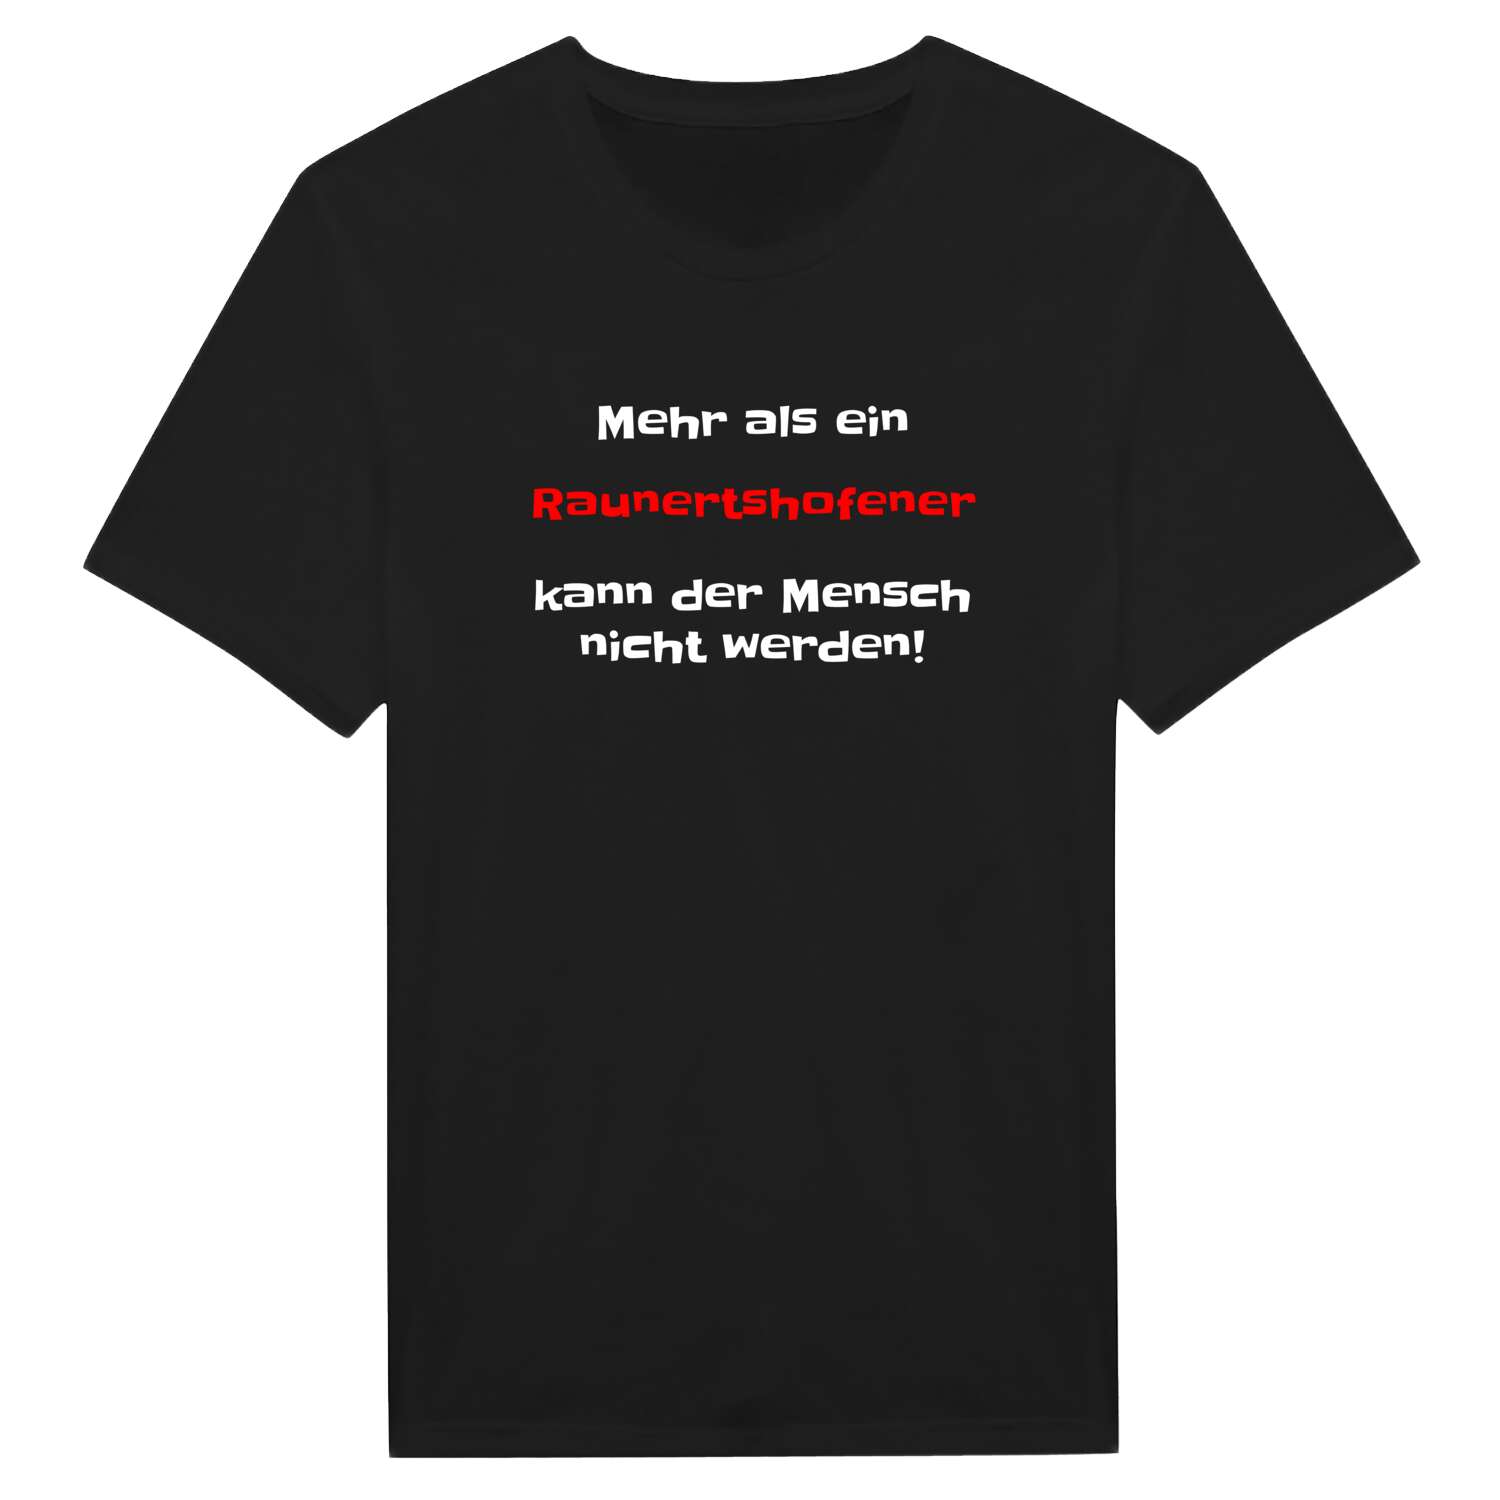 Raunertshofen T-Shirt »Mehr als ein«